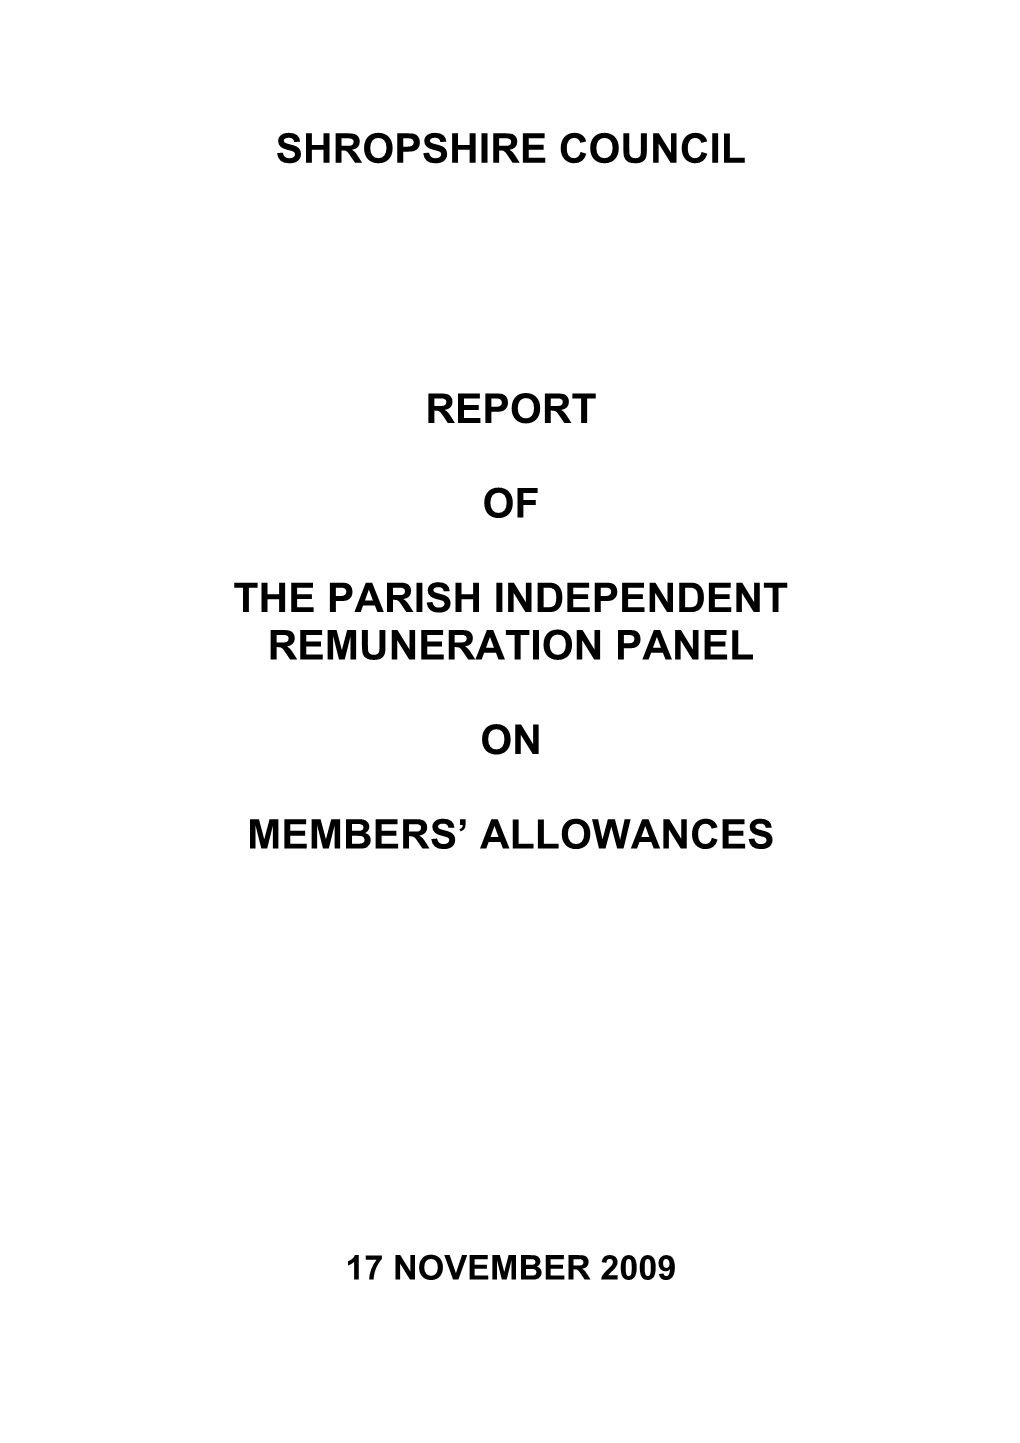 THE PARISH INDEPENDENT Remuneration PANEL